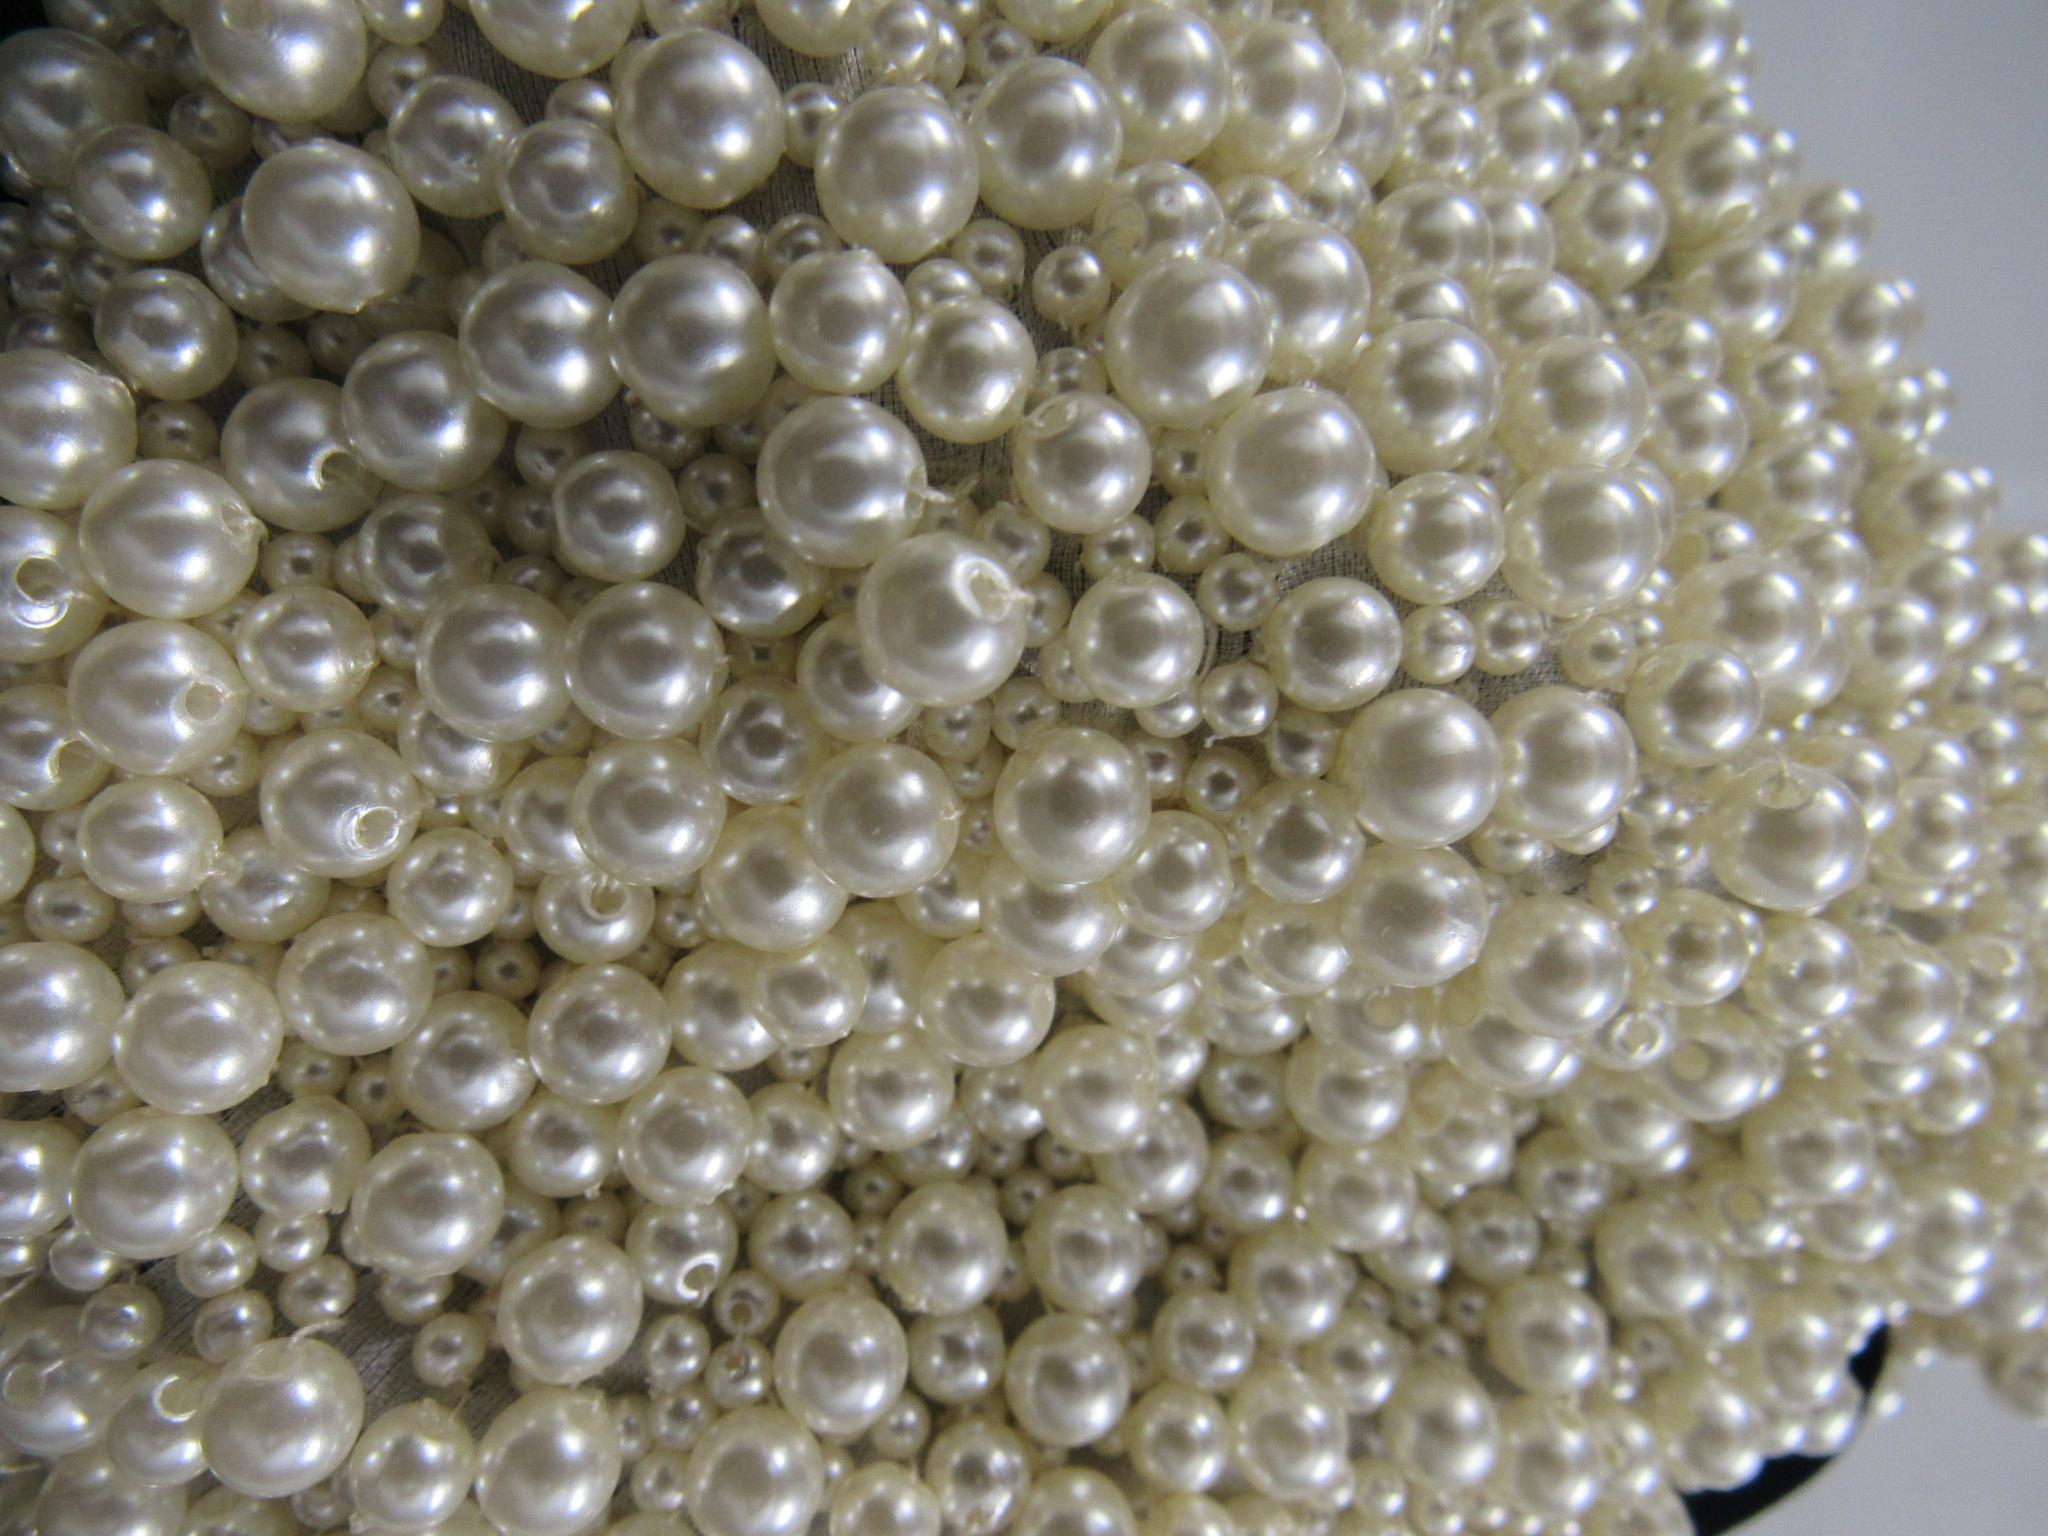 pearl embellished dress